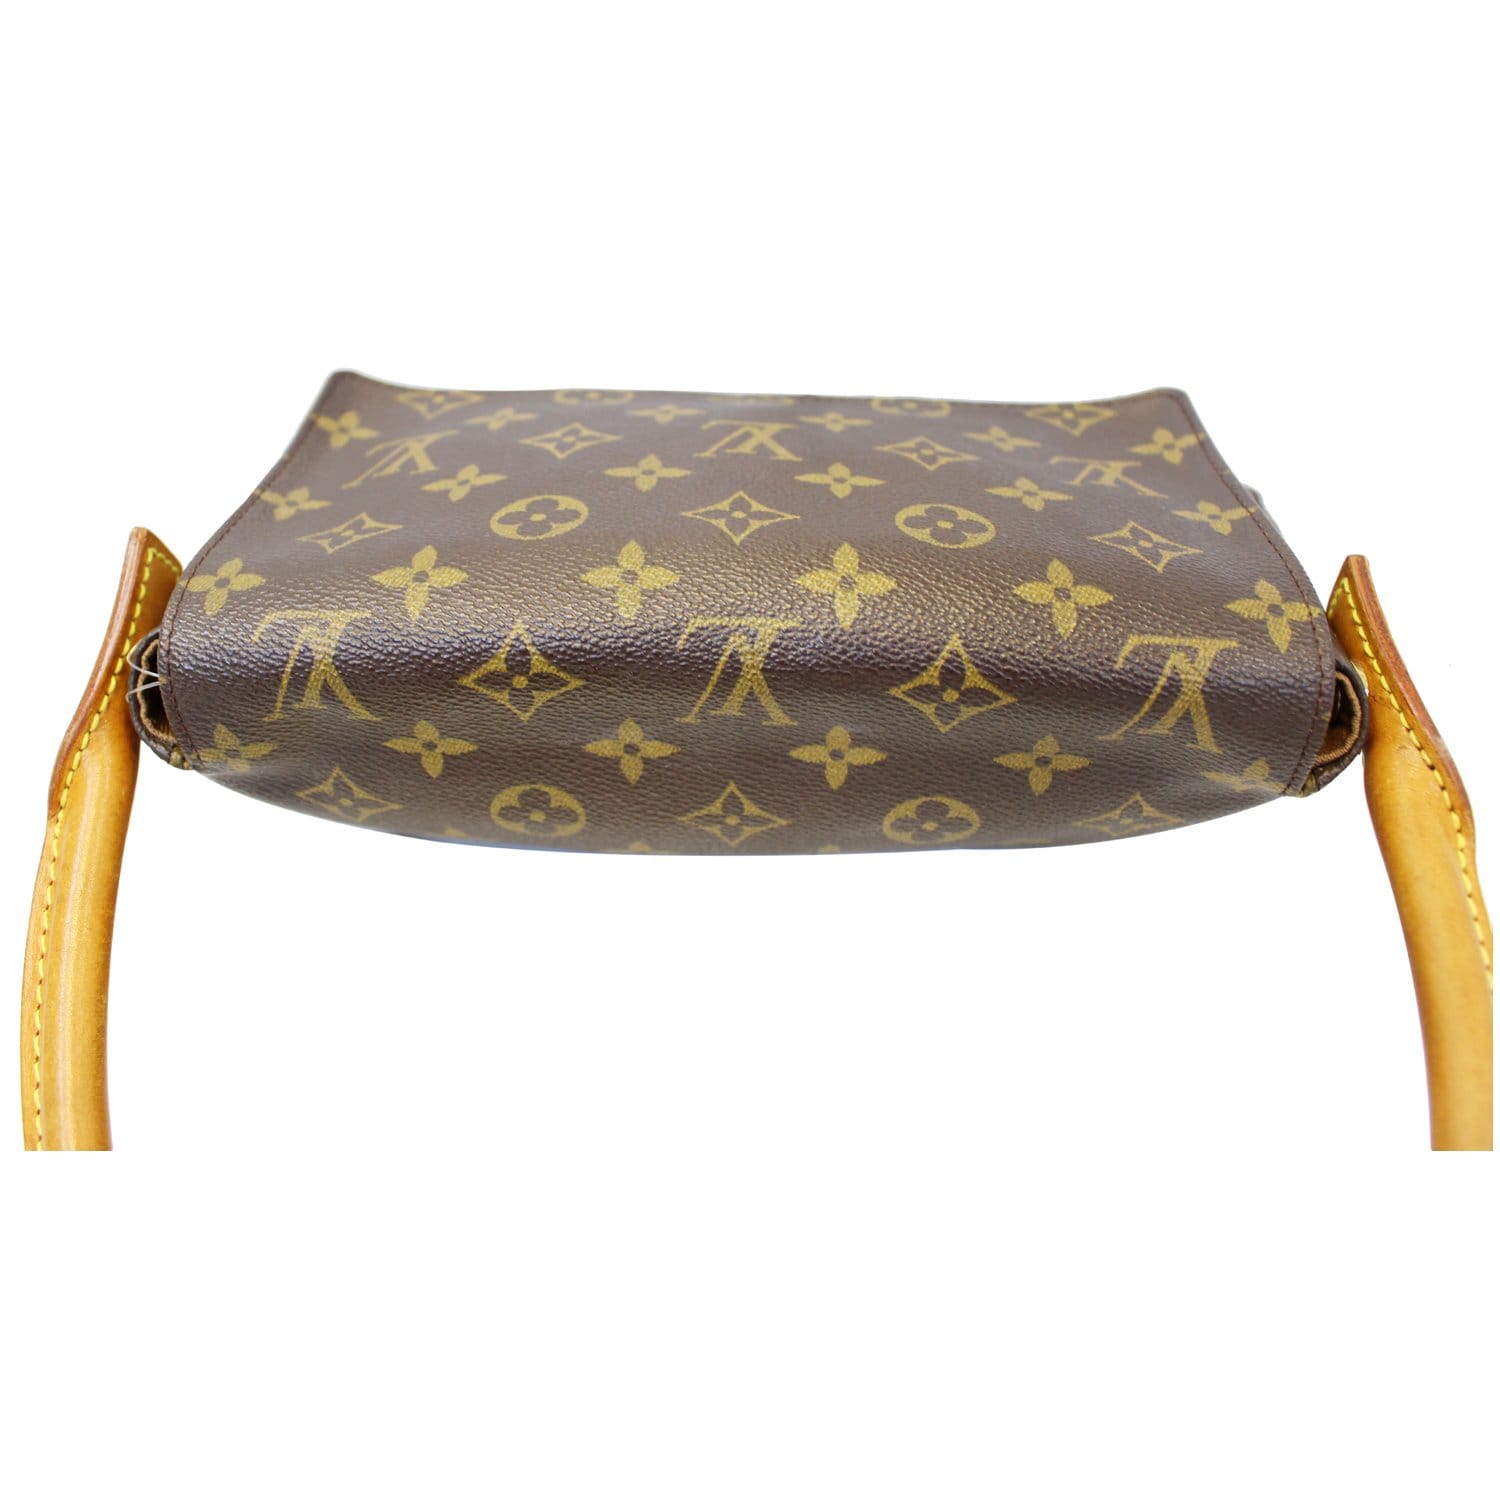 Louis Vuitton Crossbody Shoulder Bag Monogram Trotter Brown Canvas M51240